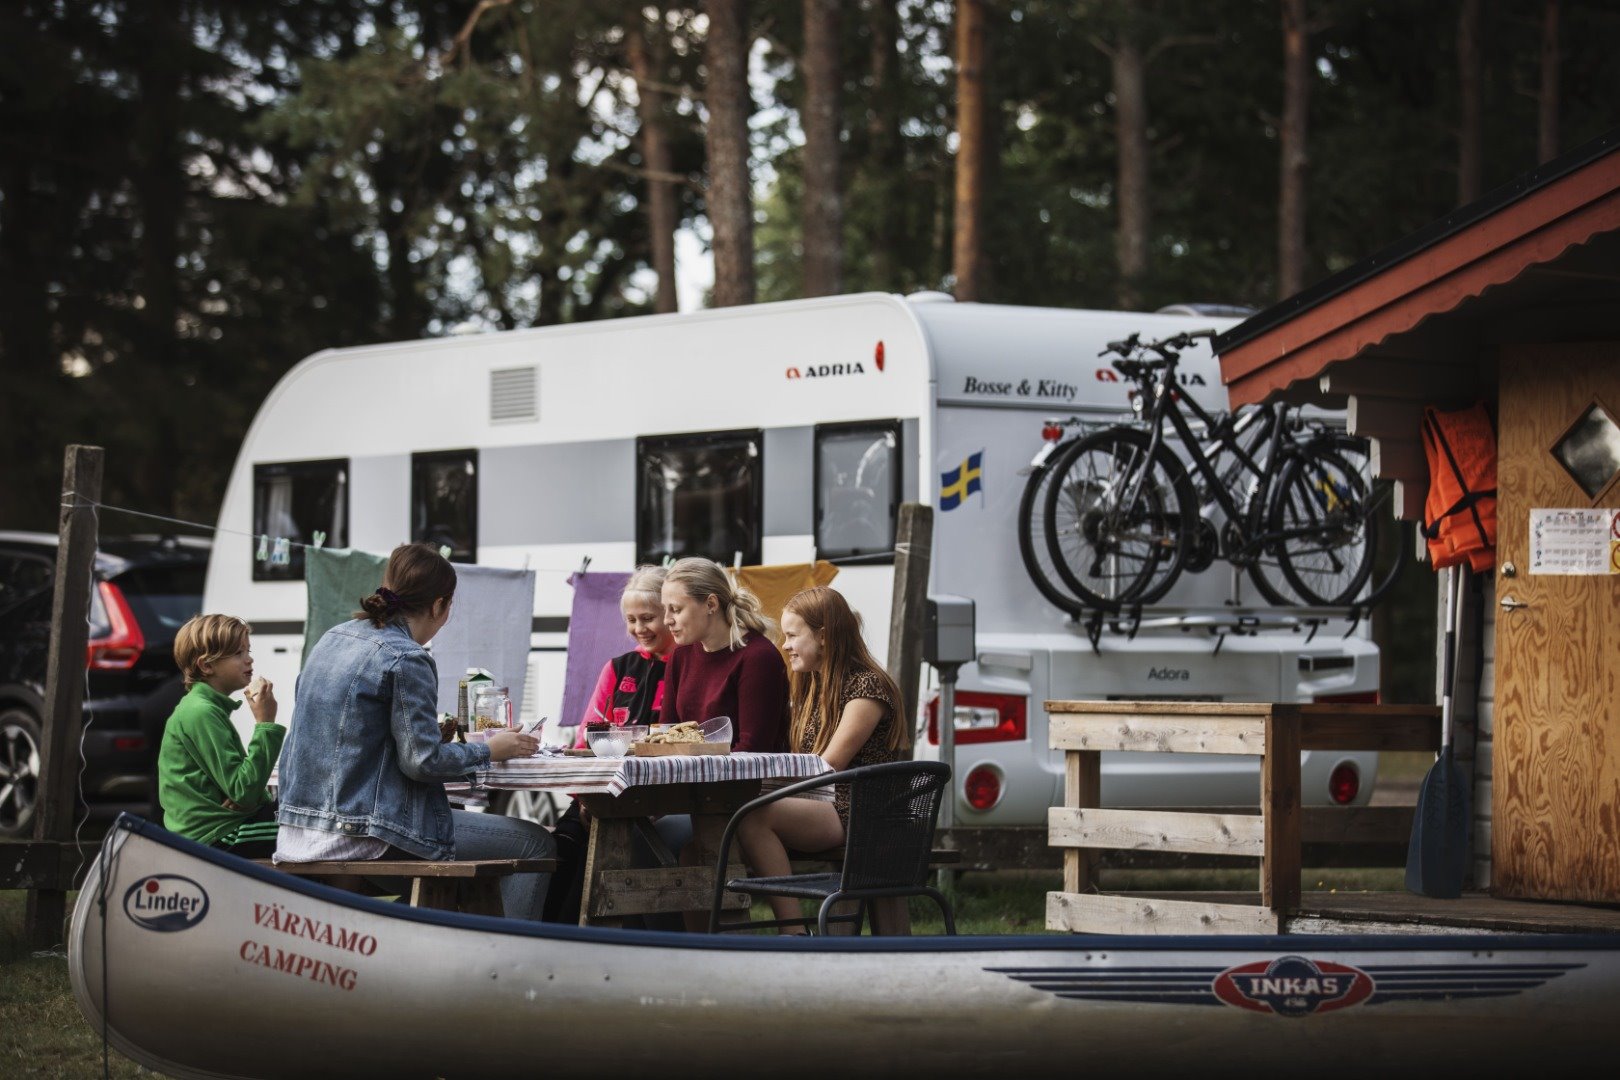 Camping Stellplatz Wohnwagen/Wohnmobil ohne Strom